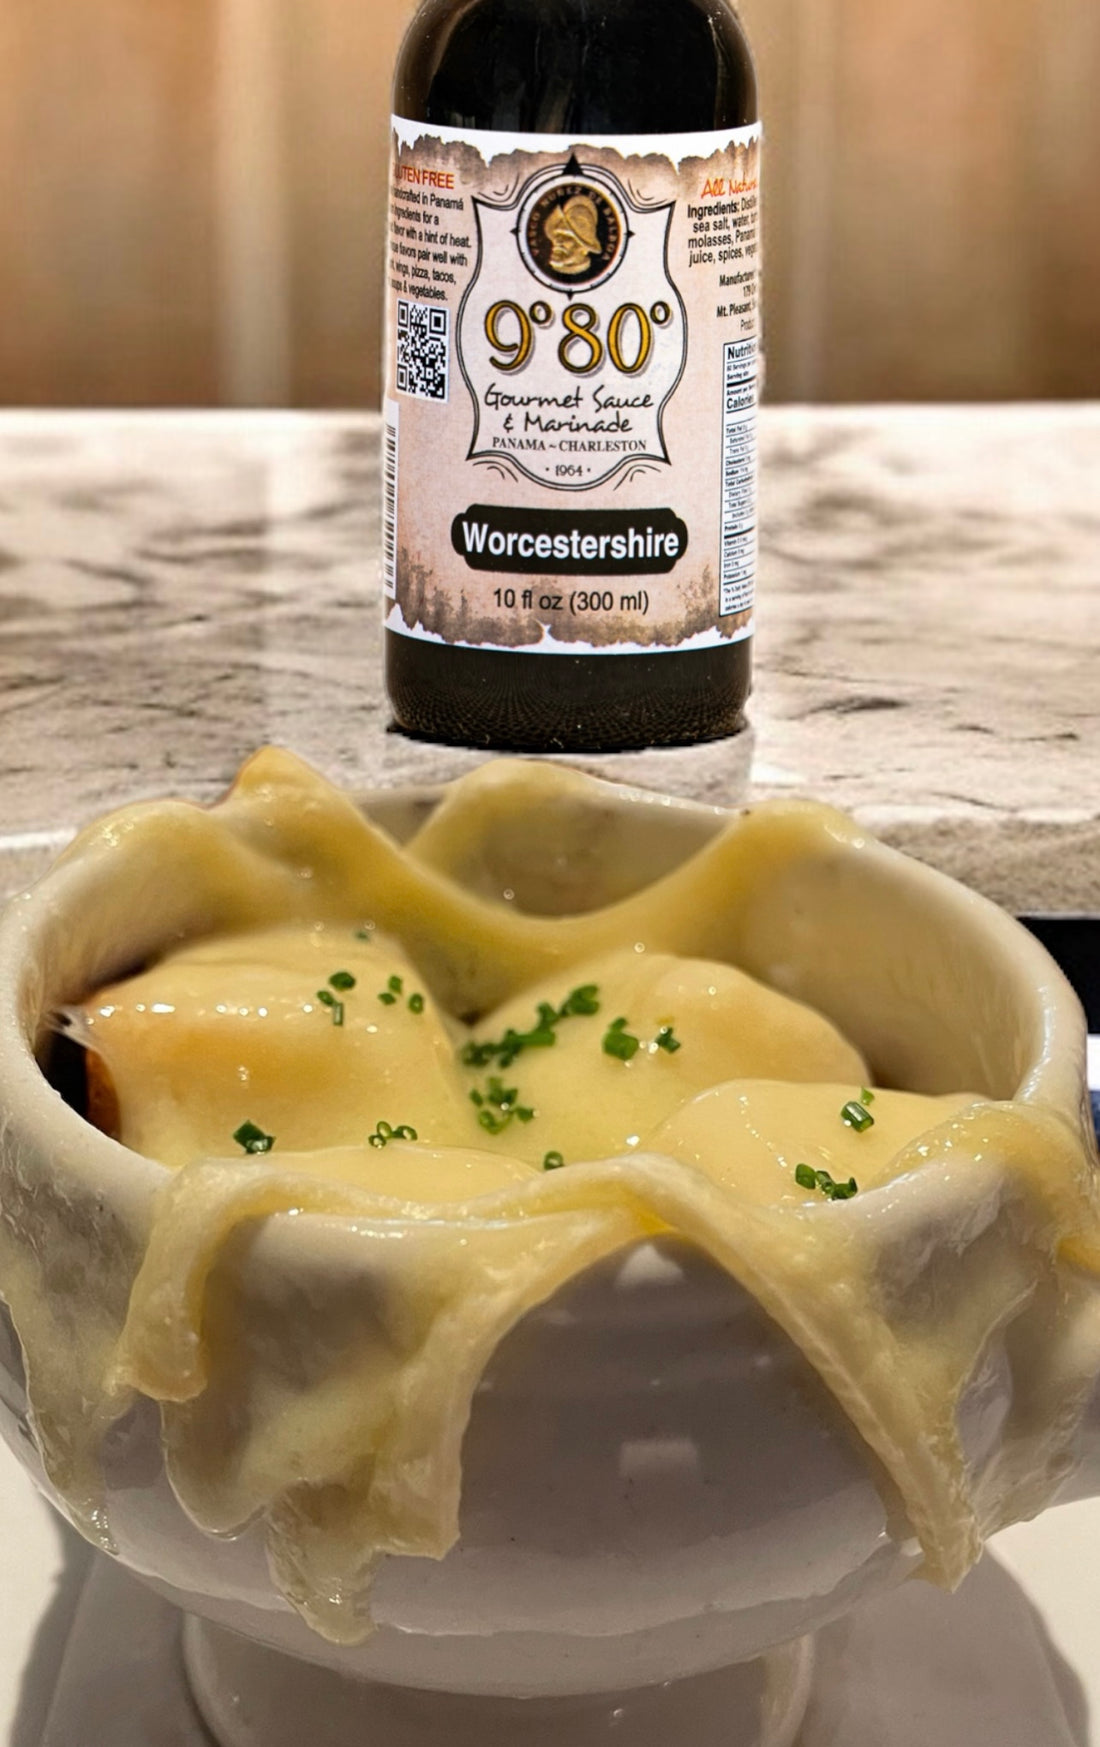 9-80-Signature-French-Onion-Soup 9º80º Sauces & Marinades